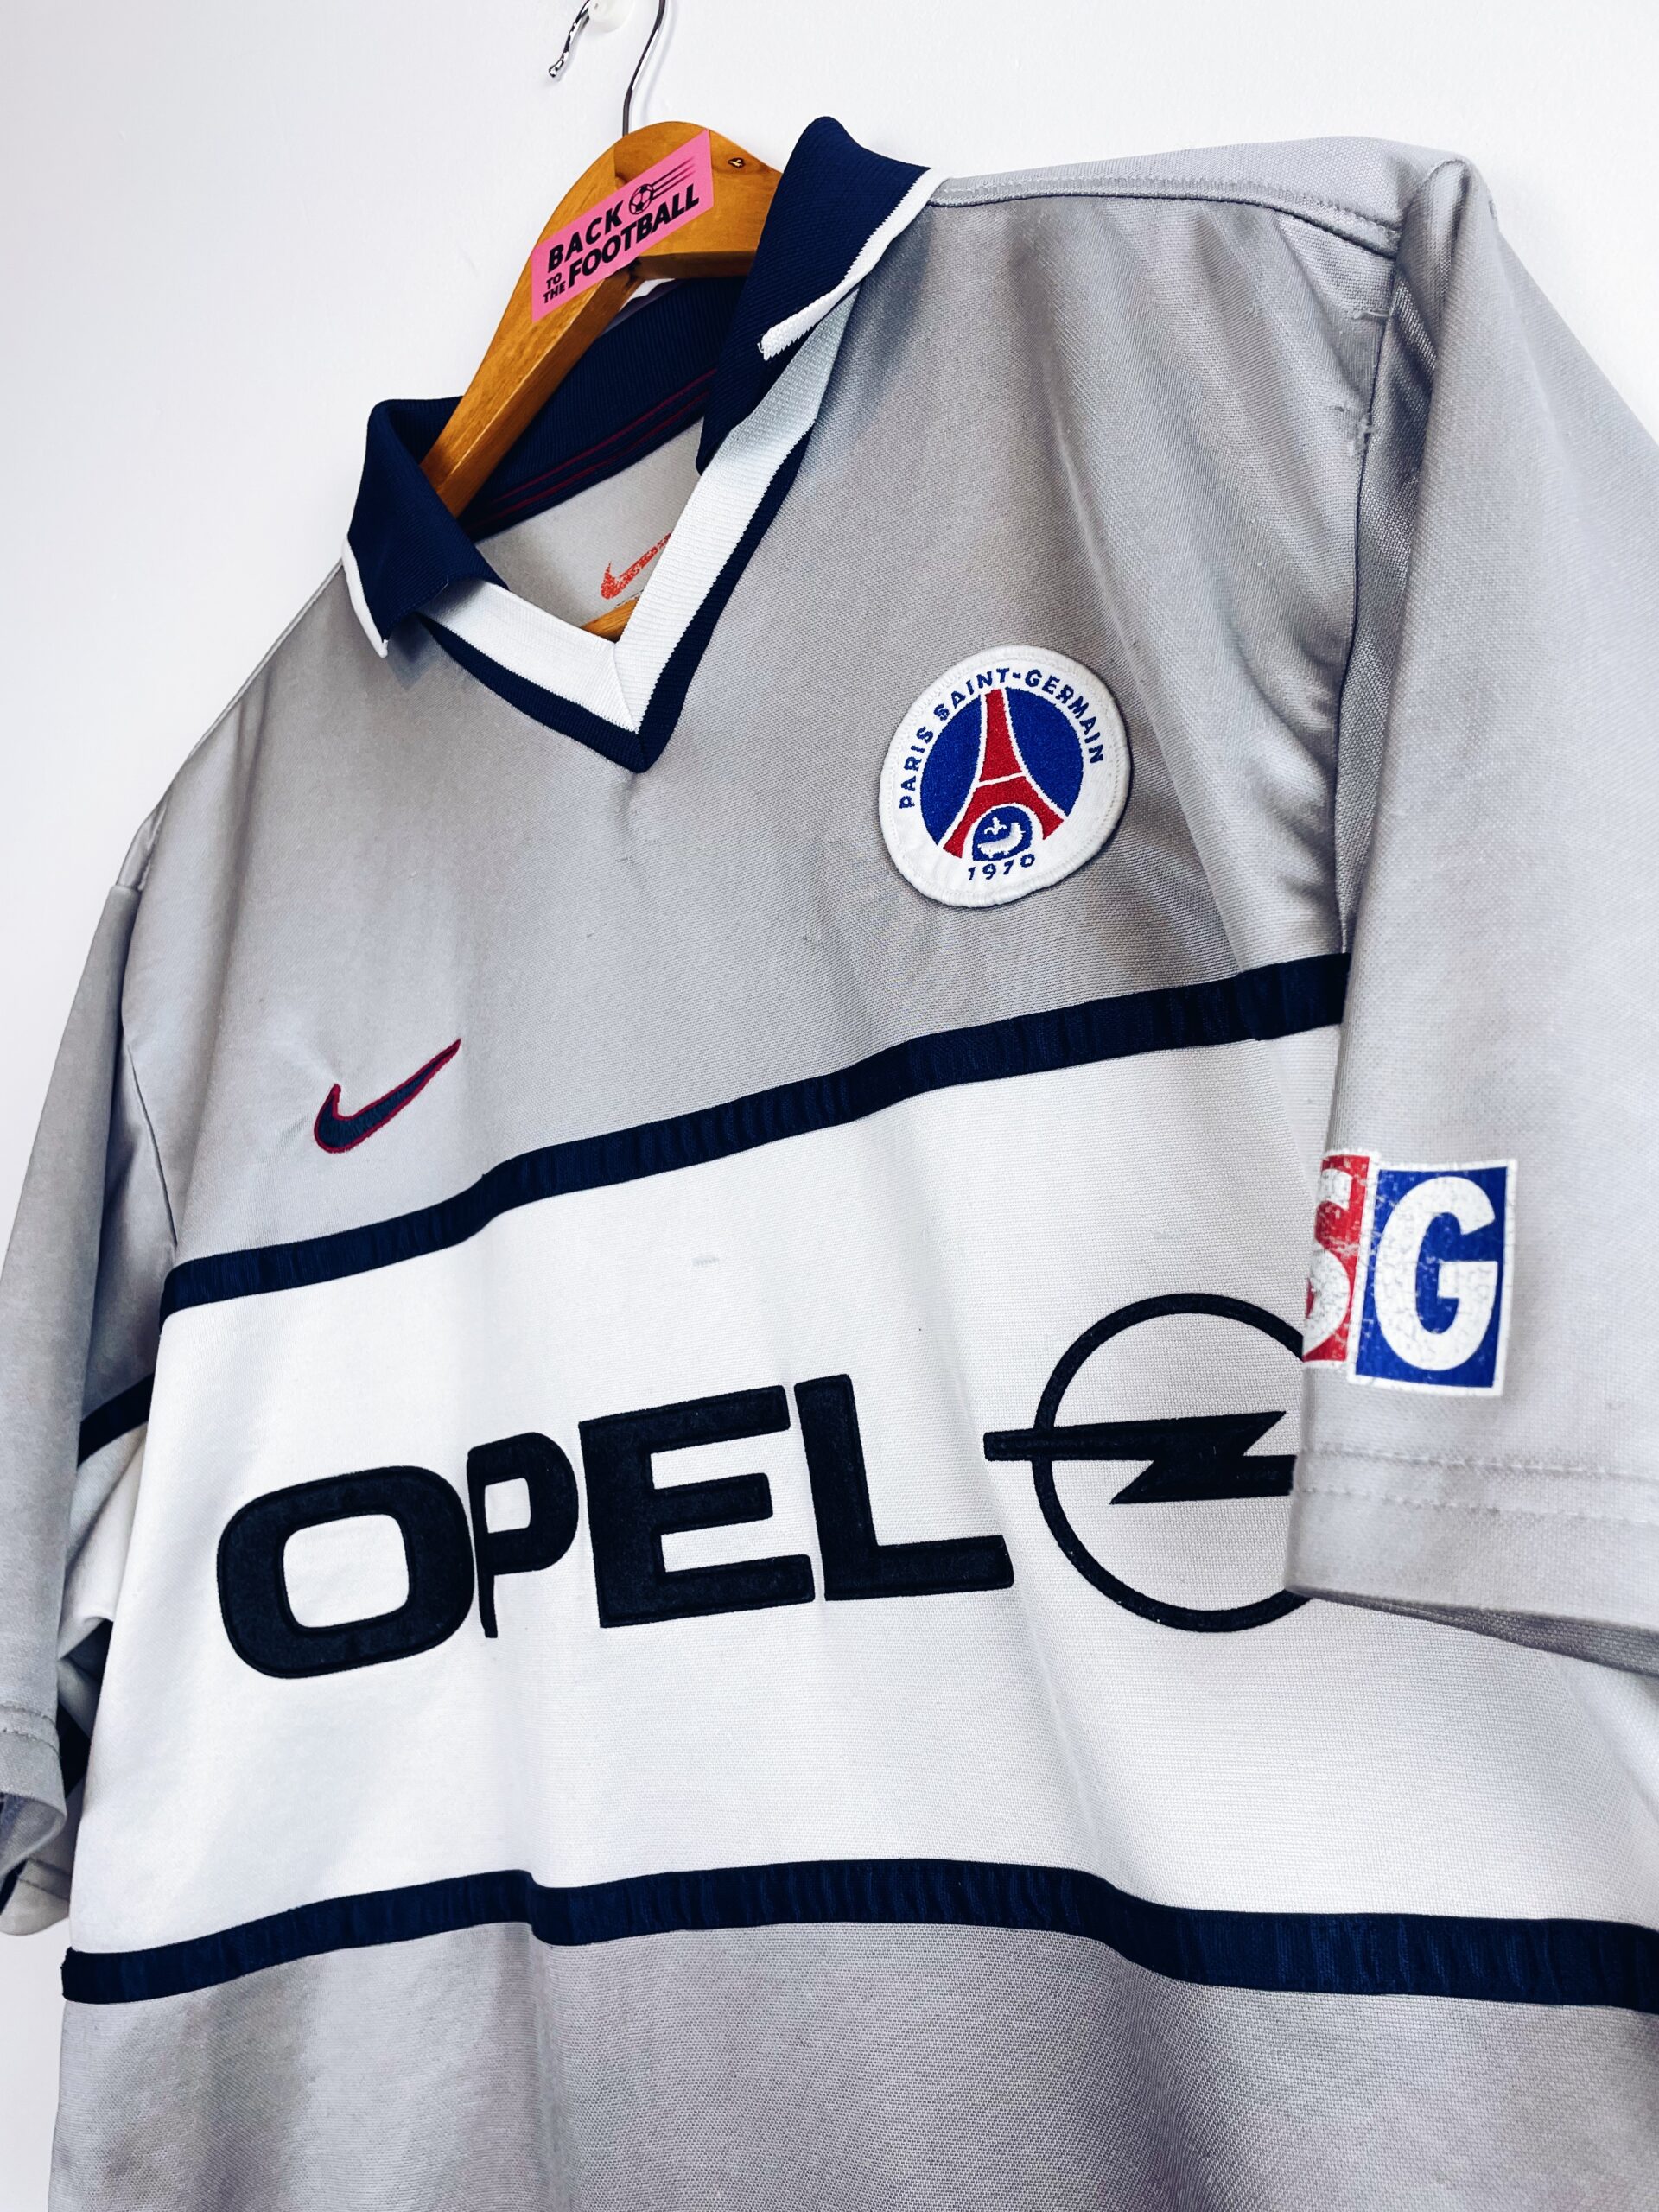 Historique des maillots du PSG : les années 2000 - PSG MAG - le